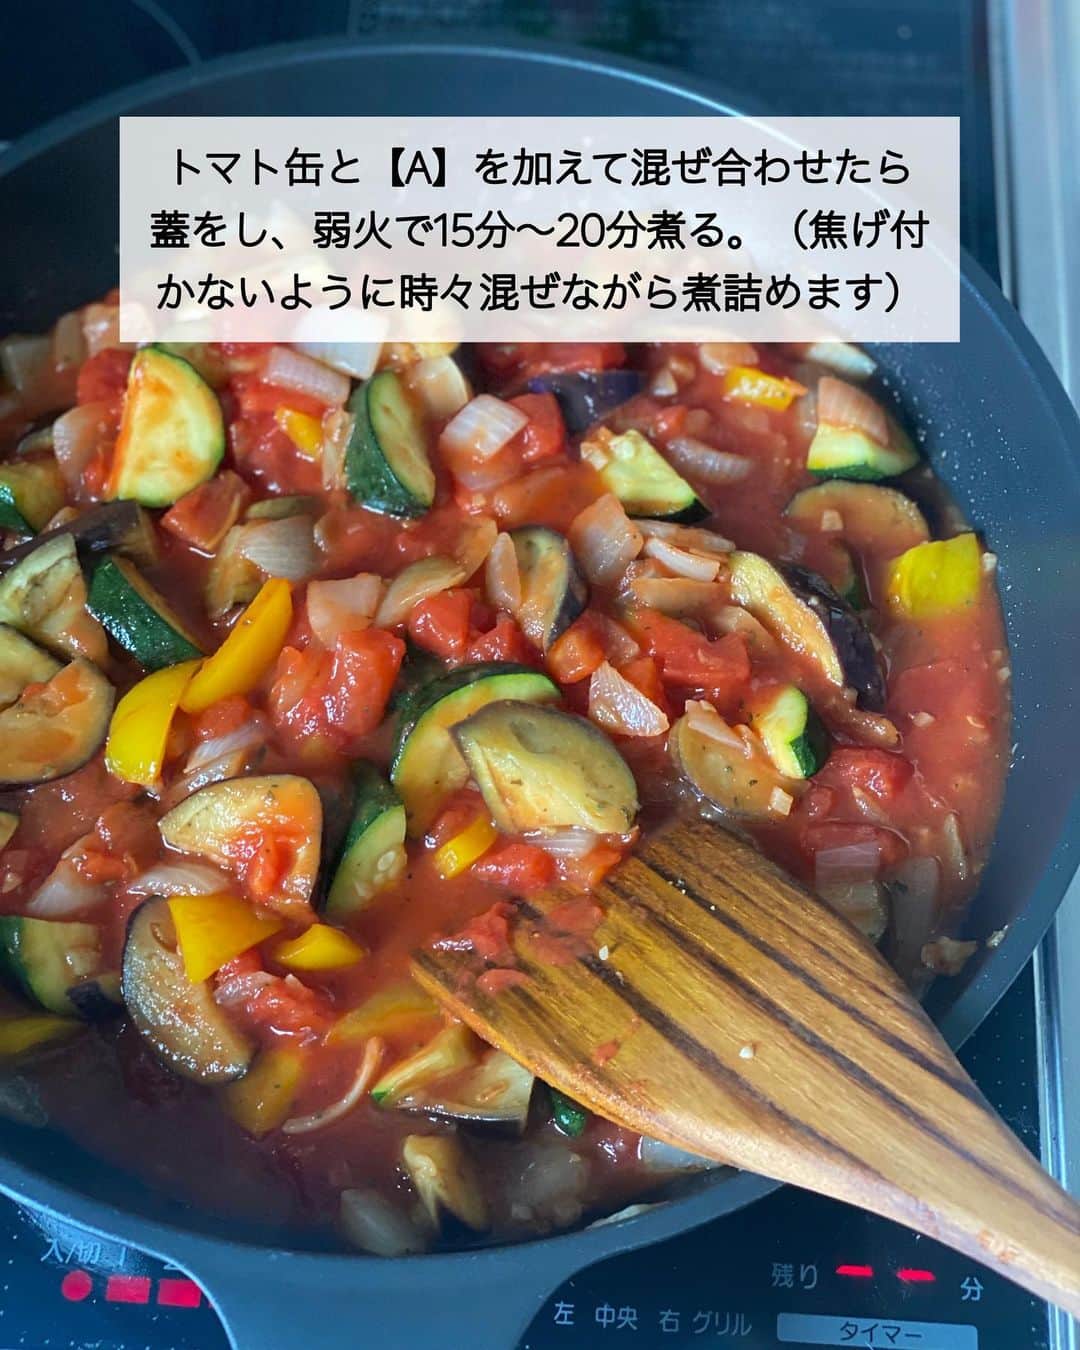 ちおりさんのインスタグラム写真 - (ちおりInstagram)「【旨みがギュッと詰まった】 ⁡ 他のレシピを見る→ @chiori.m.m をチェック✅ ⁡ ⁡ ━︎━︎━︎━︎━︎━︎━︎━︎━︎━︎━︎━︎━︎━︎ 夏野菜たっぷりラタトゥイユ🍅 ━︎━︎━︎━︎━︎━︎━︎━︎━︎━︎━︎━︎━︎━︎ ⁡ ⁡ こんにちは(^ ^) 今日は簡単野菜煮込みです🍆 ⁡ ラタトゥイユは水分が多いと味がボヤけるので 極力少なめにして、煮詰めていくと 旨みがギュッと詰まったコク深な味わいになります。夏は冷やしても◎ ⁡ そのまま食べても、パンに合わせても リメイクするなら そうめんにのせてオリーブオイルをたらしたり ドリアにしたり 色々な料理に使えるので 作り置きしておくと便利です。 ⁡ 白身魚をソテーやムニエルにして一緒に食べるととっても美味しいのでおすすめ☺️←写真あります。 ⁡ ワインのお供🍷にもぜひ^ ^ ⁡ ⁡ ⁡ ________________________________________ ⁡ ⁡ ✍︎ ✍︎recipe ✍︎ ✍︎ ⁡ ⁡ 👩‍🌾【材料】3〜4人分 •なす……………………2本（180g） •ズッキーニ………….1本（150g） •玉ねぎ…………………1個 •パプリカ（黄）……1/2個 •にんにく………………2かけ •オリーブオイル……大さじ2 •塩…………………………小さじ1/4 •カットトマト缶………1缶（400g） A白ワイン（または酒）…大さじ3 Aみりん………………………大さじ1 Aコンソメ顆粒……………大さじ1/2 A砂糖…………………………小さじ1 Aあれば乾燥バジル………小さじ1/2 ⁡ ⁡ ⁡ ________________________________________ ⁡ ⁡ ⁡ 👩‍🍳【作り方】 ❶なすはひと口大に切り、水に3分ほどさらして水気を切る。ズッキーニ、玉ねぎ、パプリカ はひと口に、にんにくはみじん切りにする。 ⁡ ❷フライパンにオリーブオイルを弱火で熱し、にんにくを炒める。香りがたってきたら玉ねぎを加え、やわらかくなるまで弱めの中火で3分ほど炒める。 ⁡ ❸なす、ズッキーニ、パプリカ を加えて塩小さじ1/4をふり、野菜から水分が出てやわらかくなるまで4分ほど炒める。 ⁡ ❹トマト缶と【A】を加えて混ぜ合わせたら蓋をし、弱火で15分〜20分煮る。（焦げ付かないように時々混ぜながら煮詰めます）必要であれば塩少々で味を調えてください。 ⁡ ⁡ ________________________________________ ⁡ ⁡ ⁡ 📝【POINT】 •パプリカはピーマン2個で代用OKです。 ⁡ •バジルをタイム（乾燥）またはオレガノ（乾燥）小さじ1/4で代用しても美味しいです。 ⁡ •工程4で煮詰めていく時は、水分がとんで焦げ付きやすくなるので何度か混ぜ合わせてください。 ⁡ •日持ちは冷蔵で3〜4日。 冷凍する場合は約3週間です。 ⁡ ⁡ ⁡ ≡︎≡︎≡︎≡︎≡︎≡︎≡︎≡︎≡︎≡︎≡︎≡︎≡︎≡︎≡︎≡︎≡︎≡︎≡︎≡︎≡︎≡︎≡︎≡︎≡︎≡︎≡︎≡︎≡︎≡︎≡︎≡︎≡︎≡︎ 【✅新刊レシピ本のお知らせ】 📕ちおり流くり返し作りたいおかず 🙇🏻‍♀️おかげ様で書籍累計10万部を突破しました。 ⁡ ⁡ 全国の書店、Amazon、楽天ブックス 宝島チャンネルにて発売中です。 ⁡ ➤ ➤ ➤ @chiori.m.m のストーリーハイライト。 プロフィールのリンクからご覧いただけます😊 📗ちおりの簡単絶品おかず１、２ 既刊もぜひご覧いただきたいです。 ⁡ ≡︎≡︎≡︎≡︎≡︎≡︎≡︎≡︎≡︎≡︎≡︎≡︎≡︎≡︎≡︎≡︎≡︎≡︎≡︎≡︎≡︎≡︎≡︎≡︎≡︎≡︎≡︎≡︎≡︎≡︎≡︎≡︎≡︎≡︎ ⁡ ⁡ 最後までご覧いただきありがとうございます😊 ⁑ ⁑ ⁑ ⁑ ⁑ ⁑ ⁑  #なす #なすレシピ #ラタトゥイユ   #Nadiaレシピ #Nadiaartist   #料理 #食卓 #献立 #簡単ごはん  #簡単レシピ #節約レシピ #時短レシピ  #日々の暮らし #作り置きレシピ  #ズッキーニレシピ #トマト缶レシピ   #夕飯レシピ #お弁当レシピ #定番レシピ  #料理初心者  #おつまみレシピ #副菜レシピ  #作り置き #料理レシピ #茄子レシピ  #トマト缶 #ラタトゥイユリメイク  #ラタトゥイユレシピ」7月13日 13時02分 - chiori.m.m